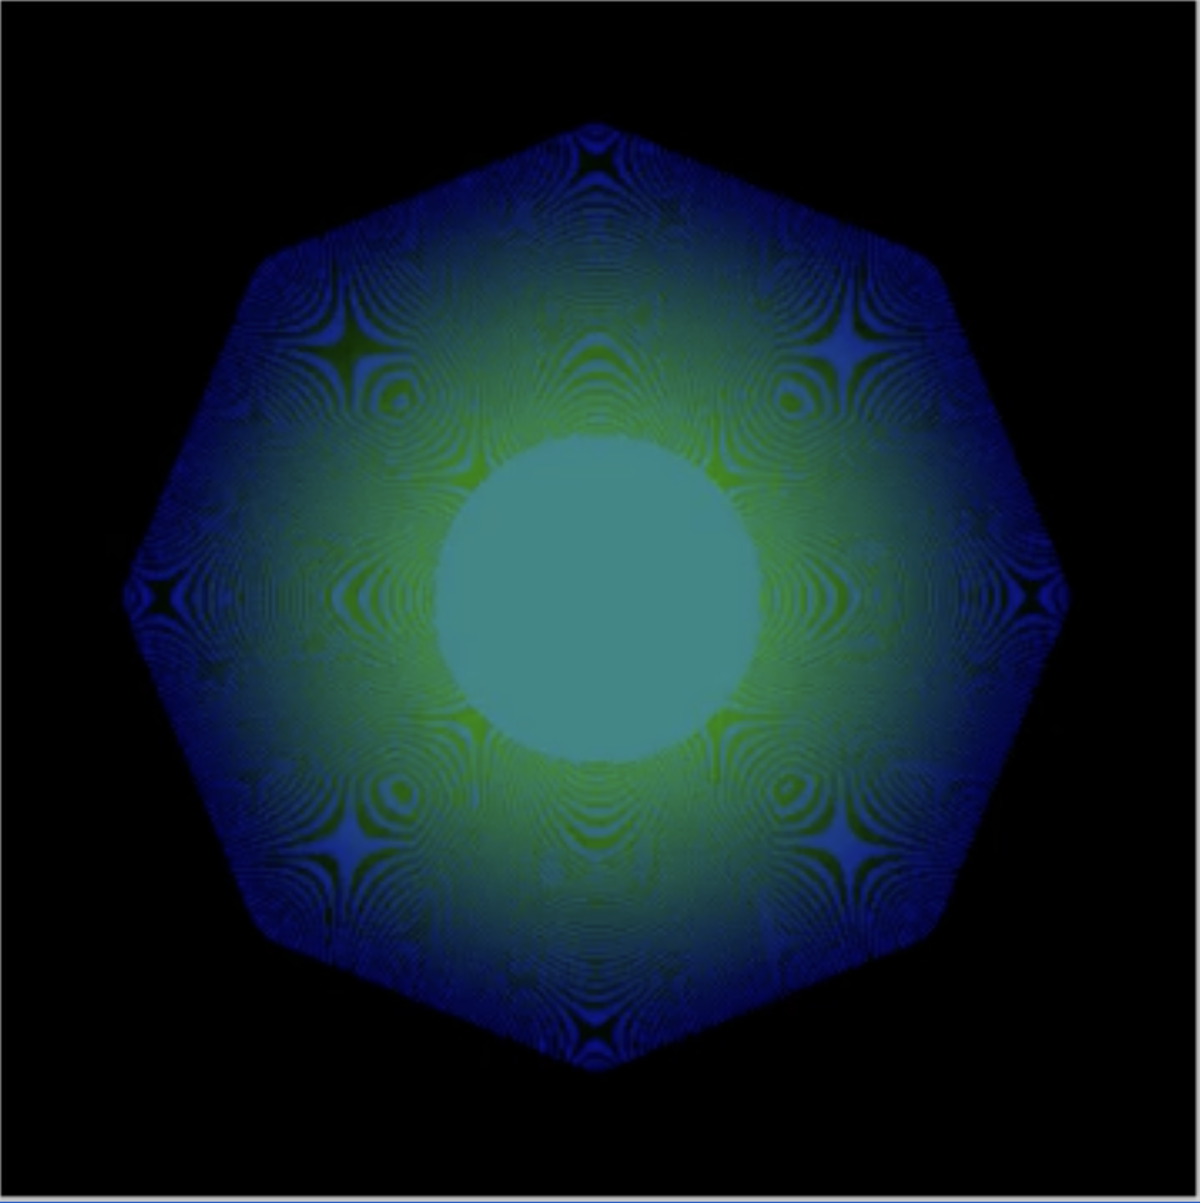 A still of the Quantum NFT, a pixelated blue-green dot.